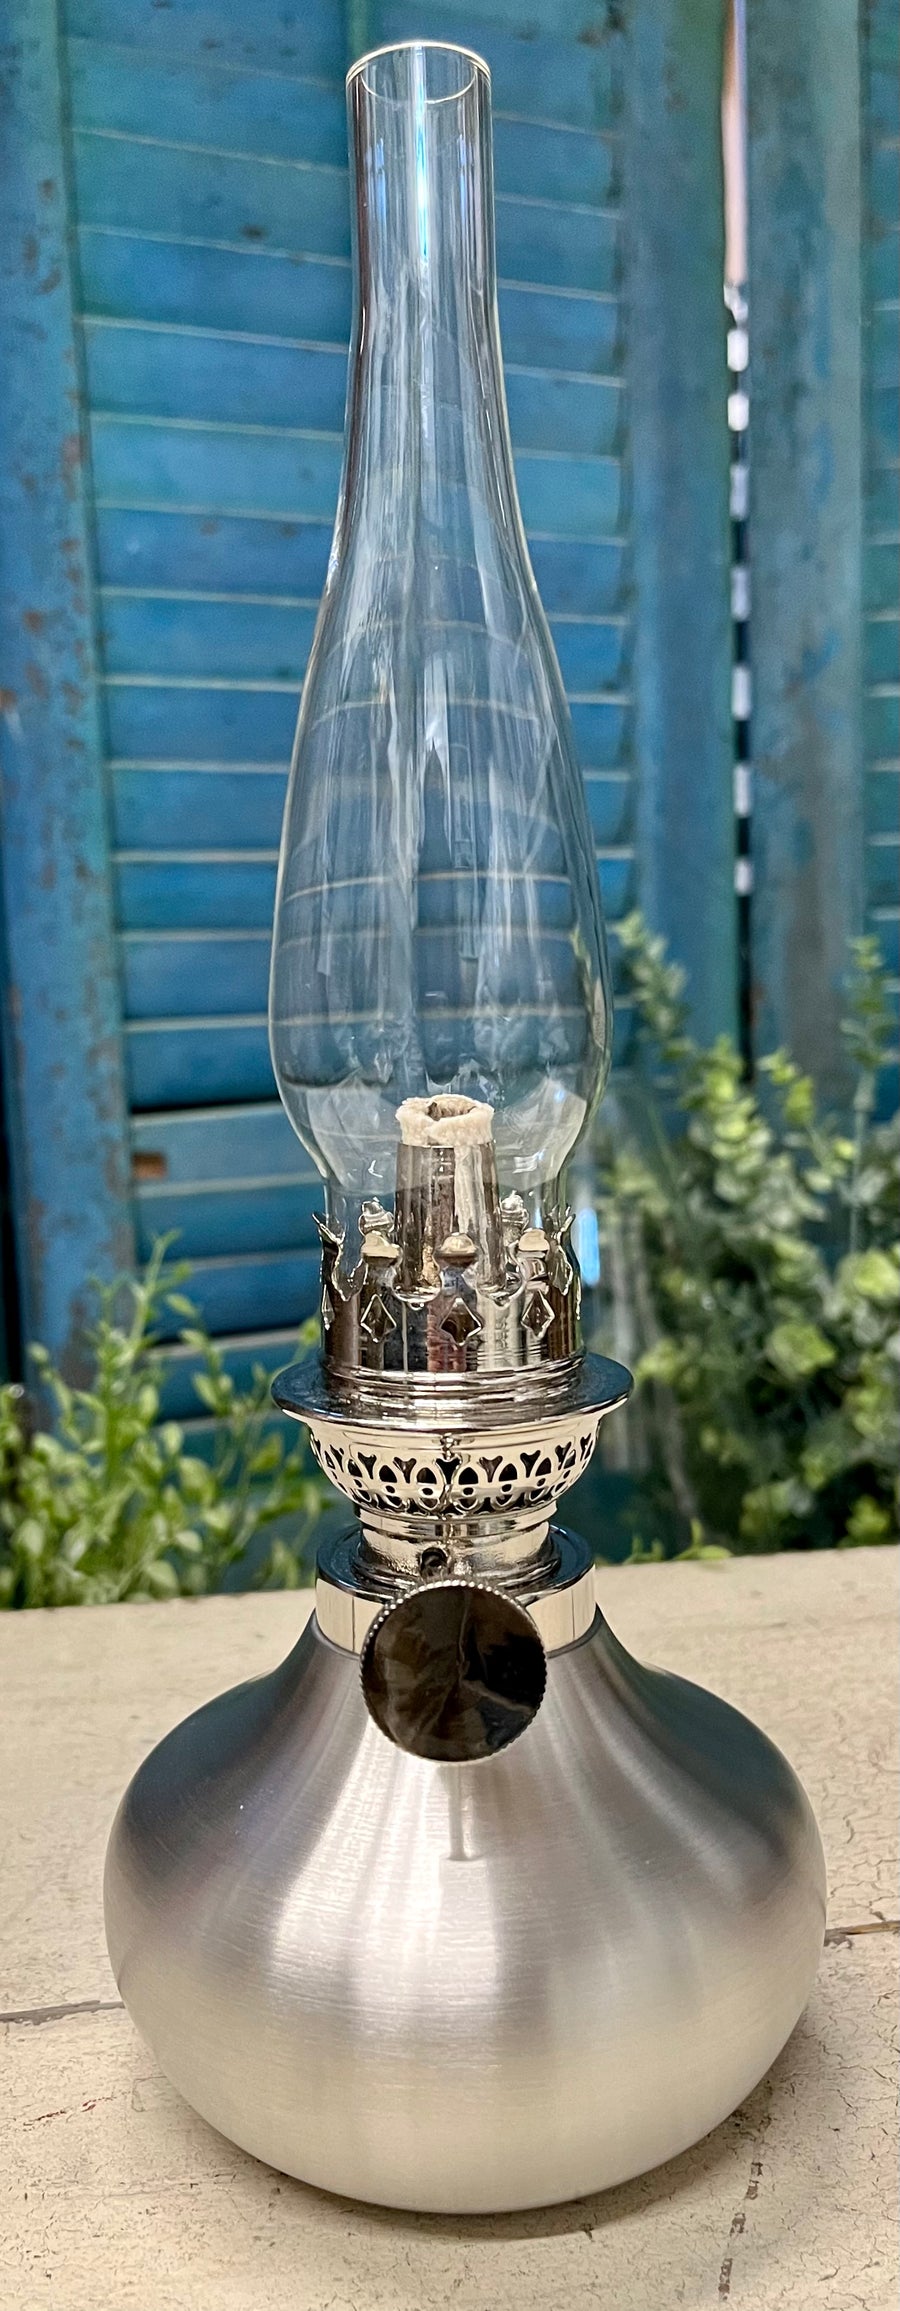 Danforth Pewter Oil Lamp - Shallot